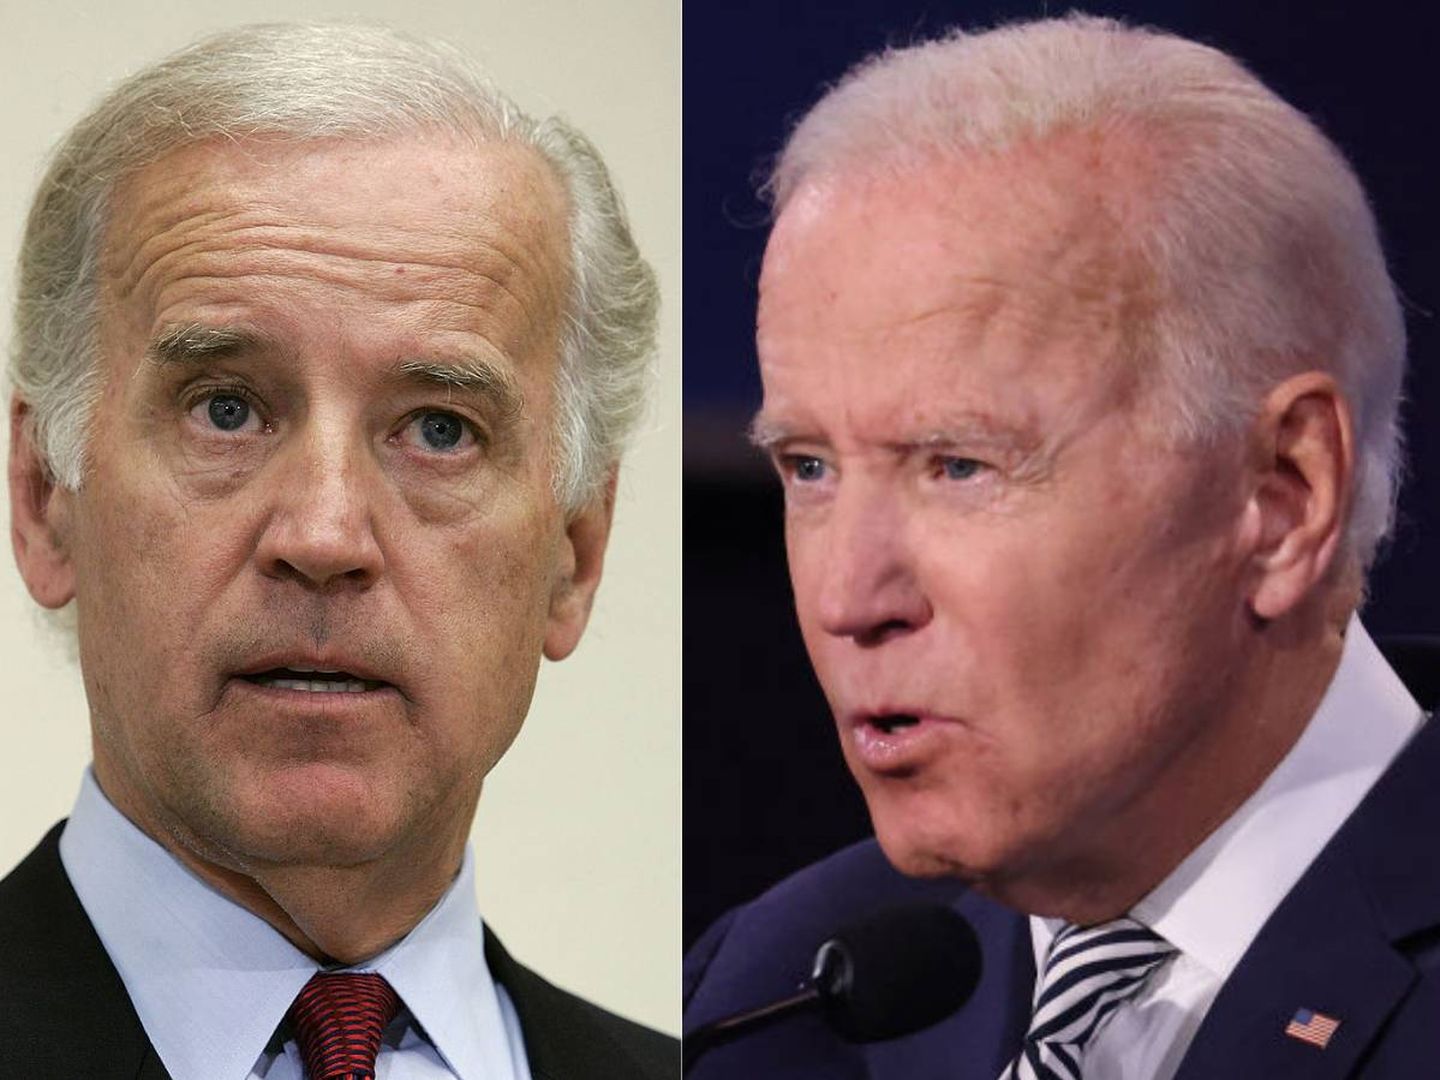 Joe Biden en 2005 versus Joe Biden en 2020. (Getty)